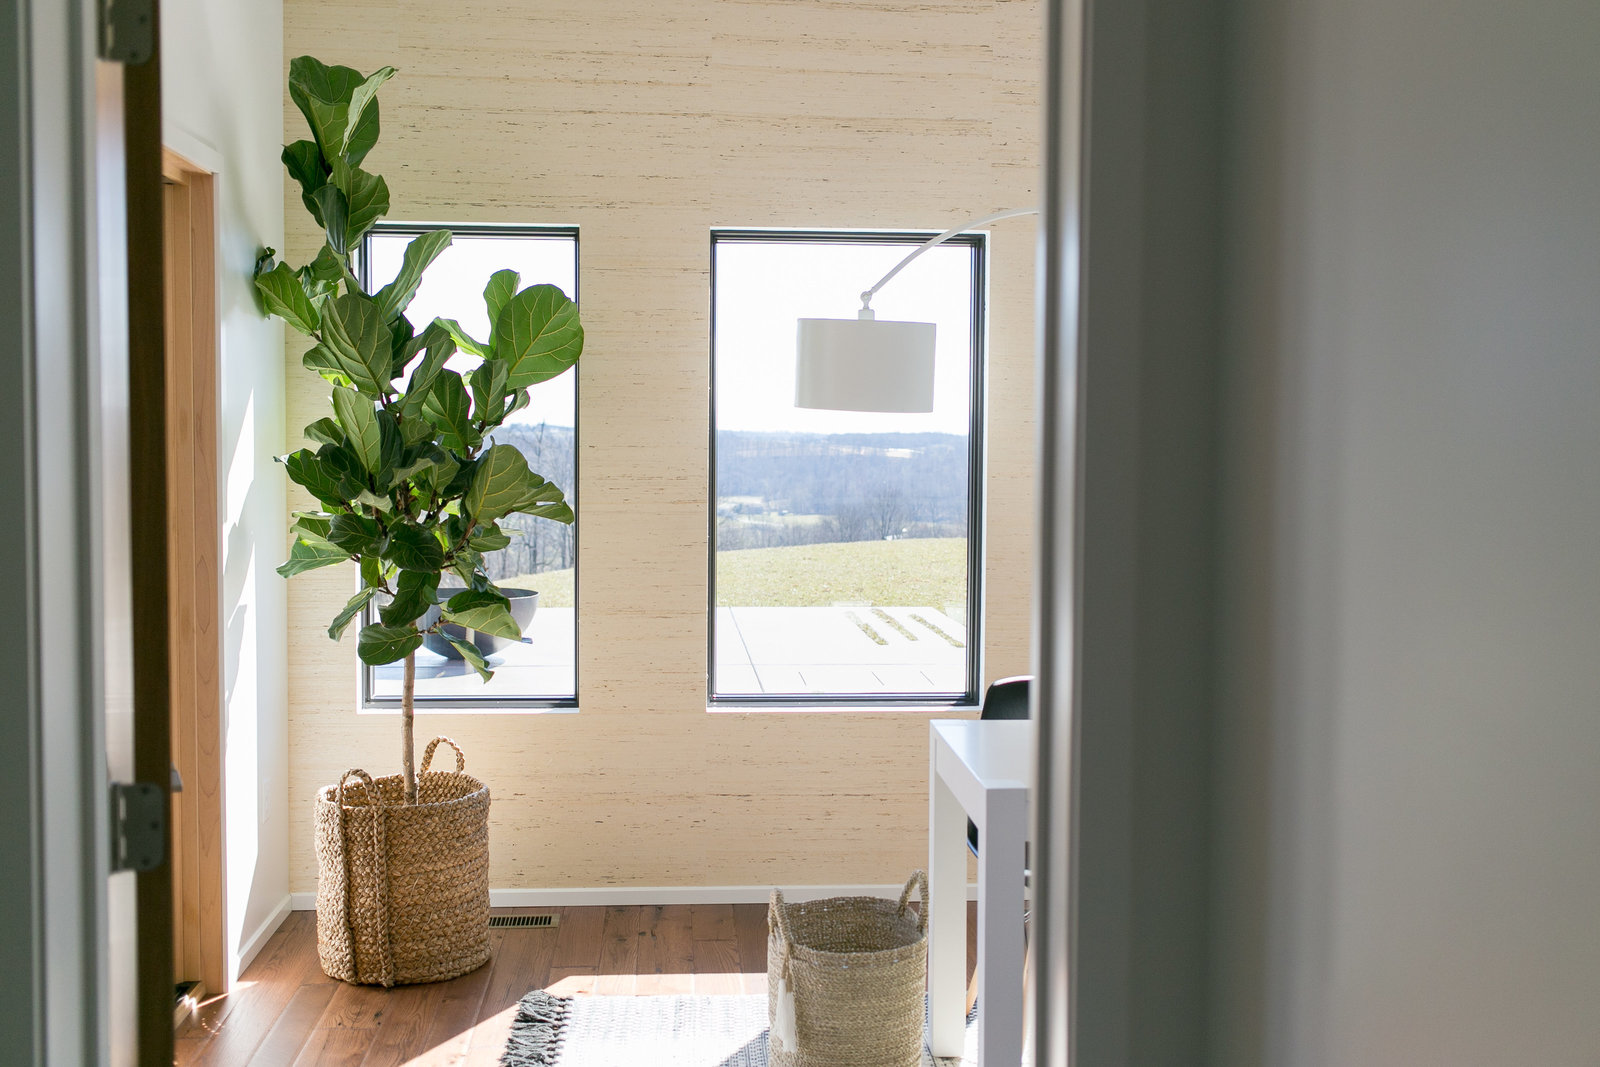 Modern, minimalist home office design